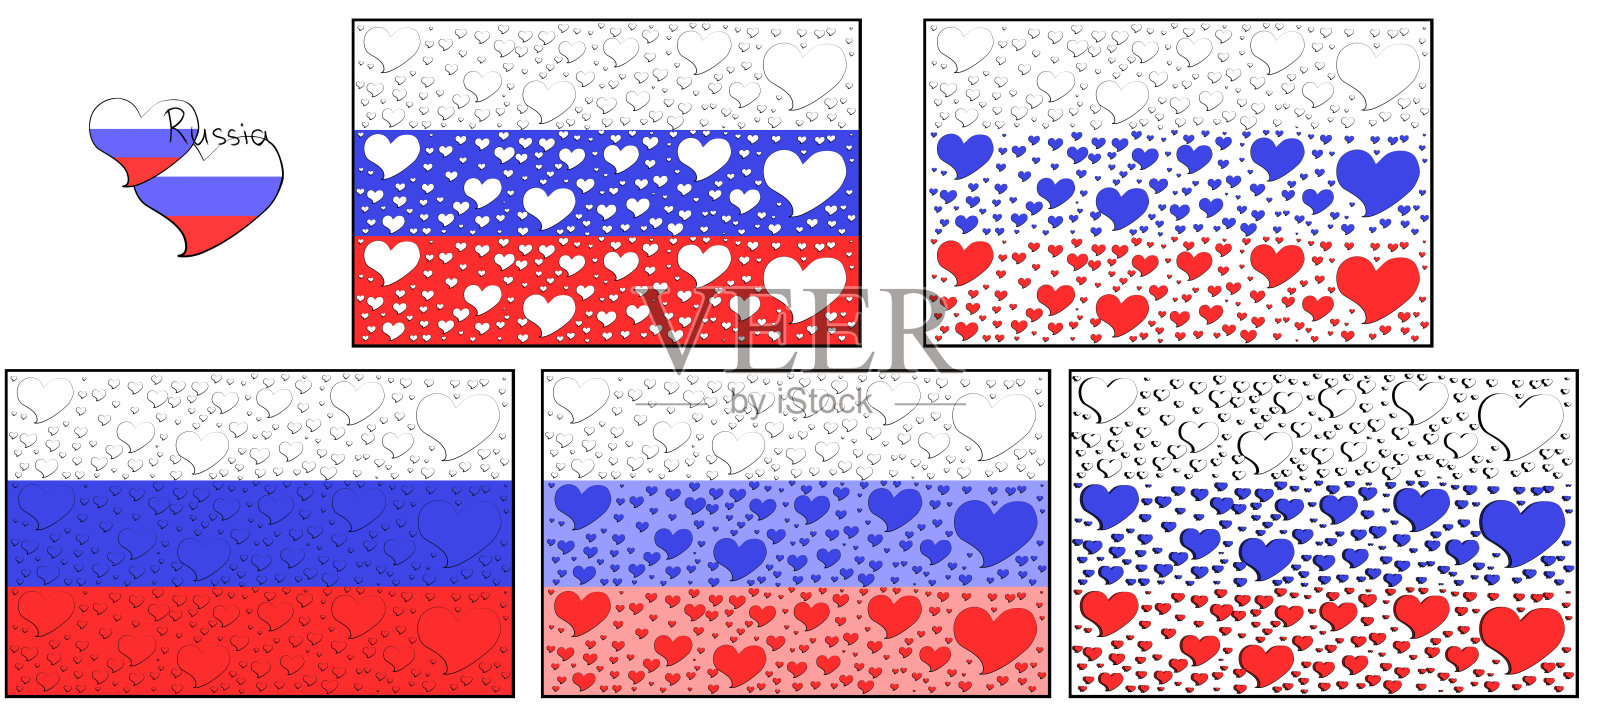 插图的不同变种俄罗斯三色旗与心的形状插画图片素材